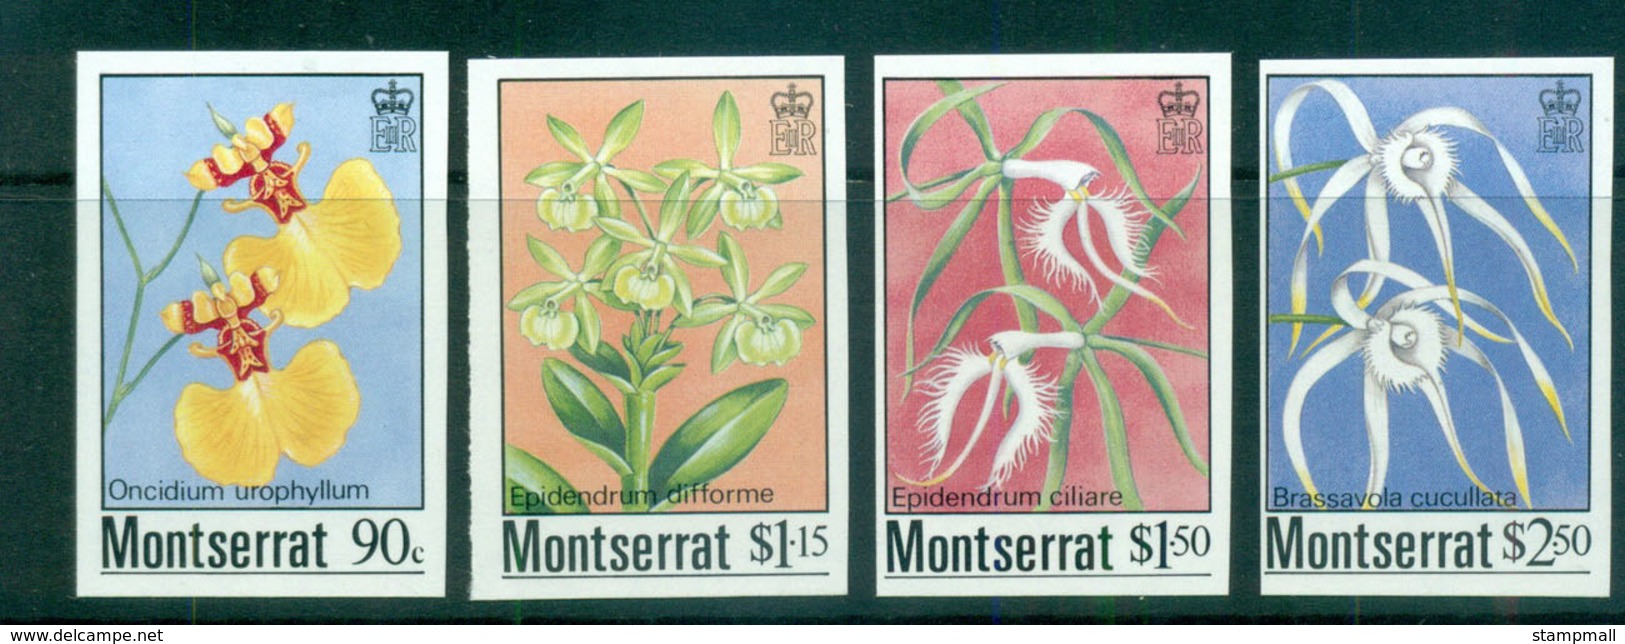 Montserrat 1985 Orchids IMPERF MUH Lot68579 - Montserrat